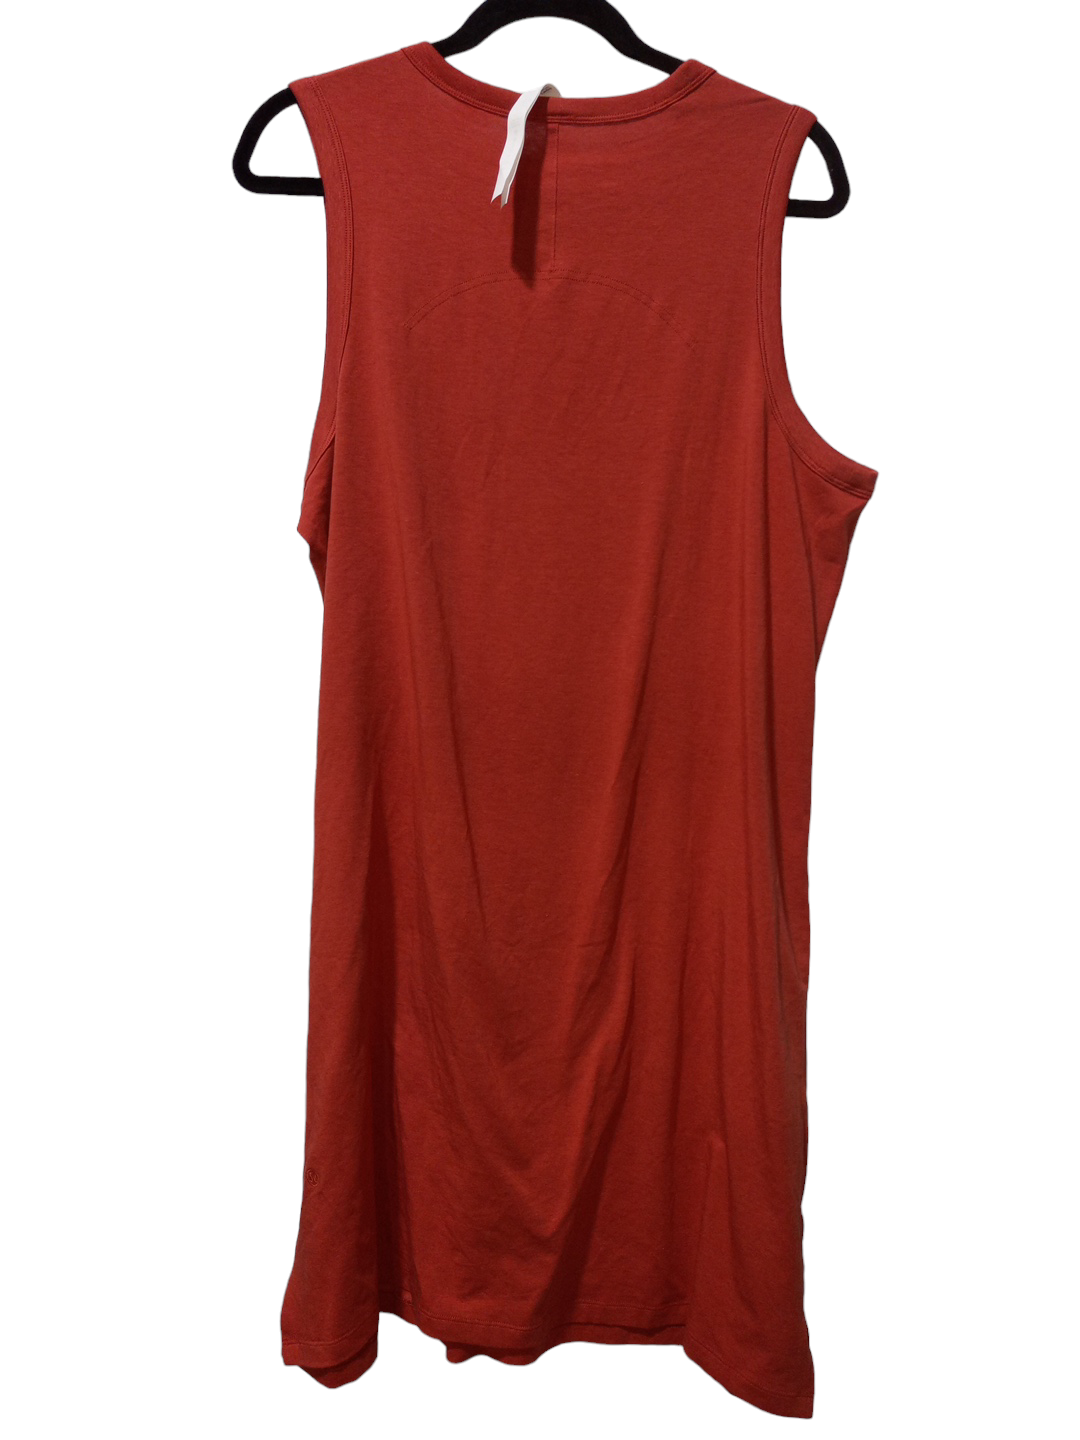 Orange Athletic Dress Lululemon, Size 12